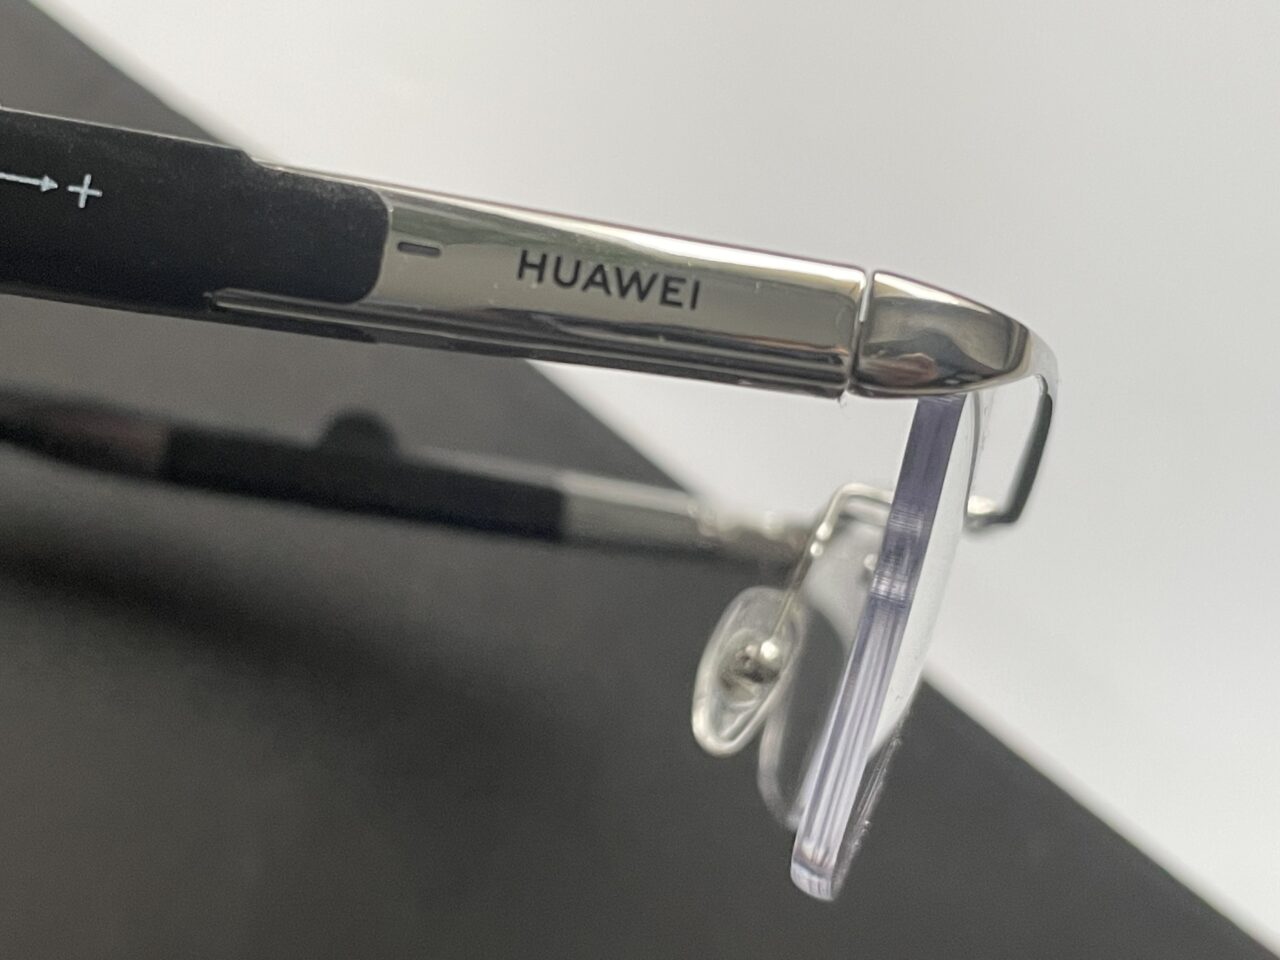 Zbliżenie na srebrną obręcz okularów z logo marki Huawei, położone na czarnej powierzchni.